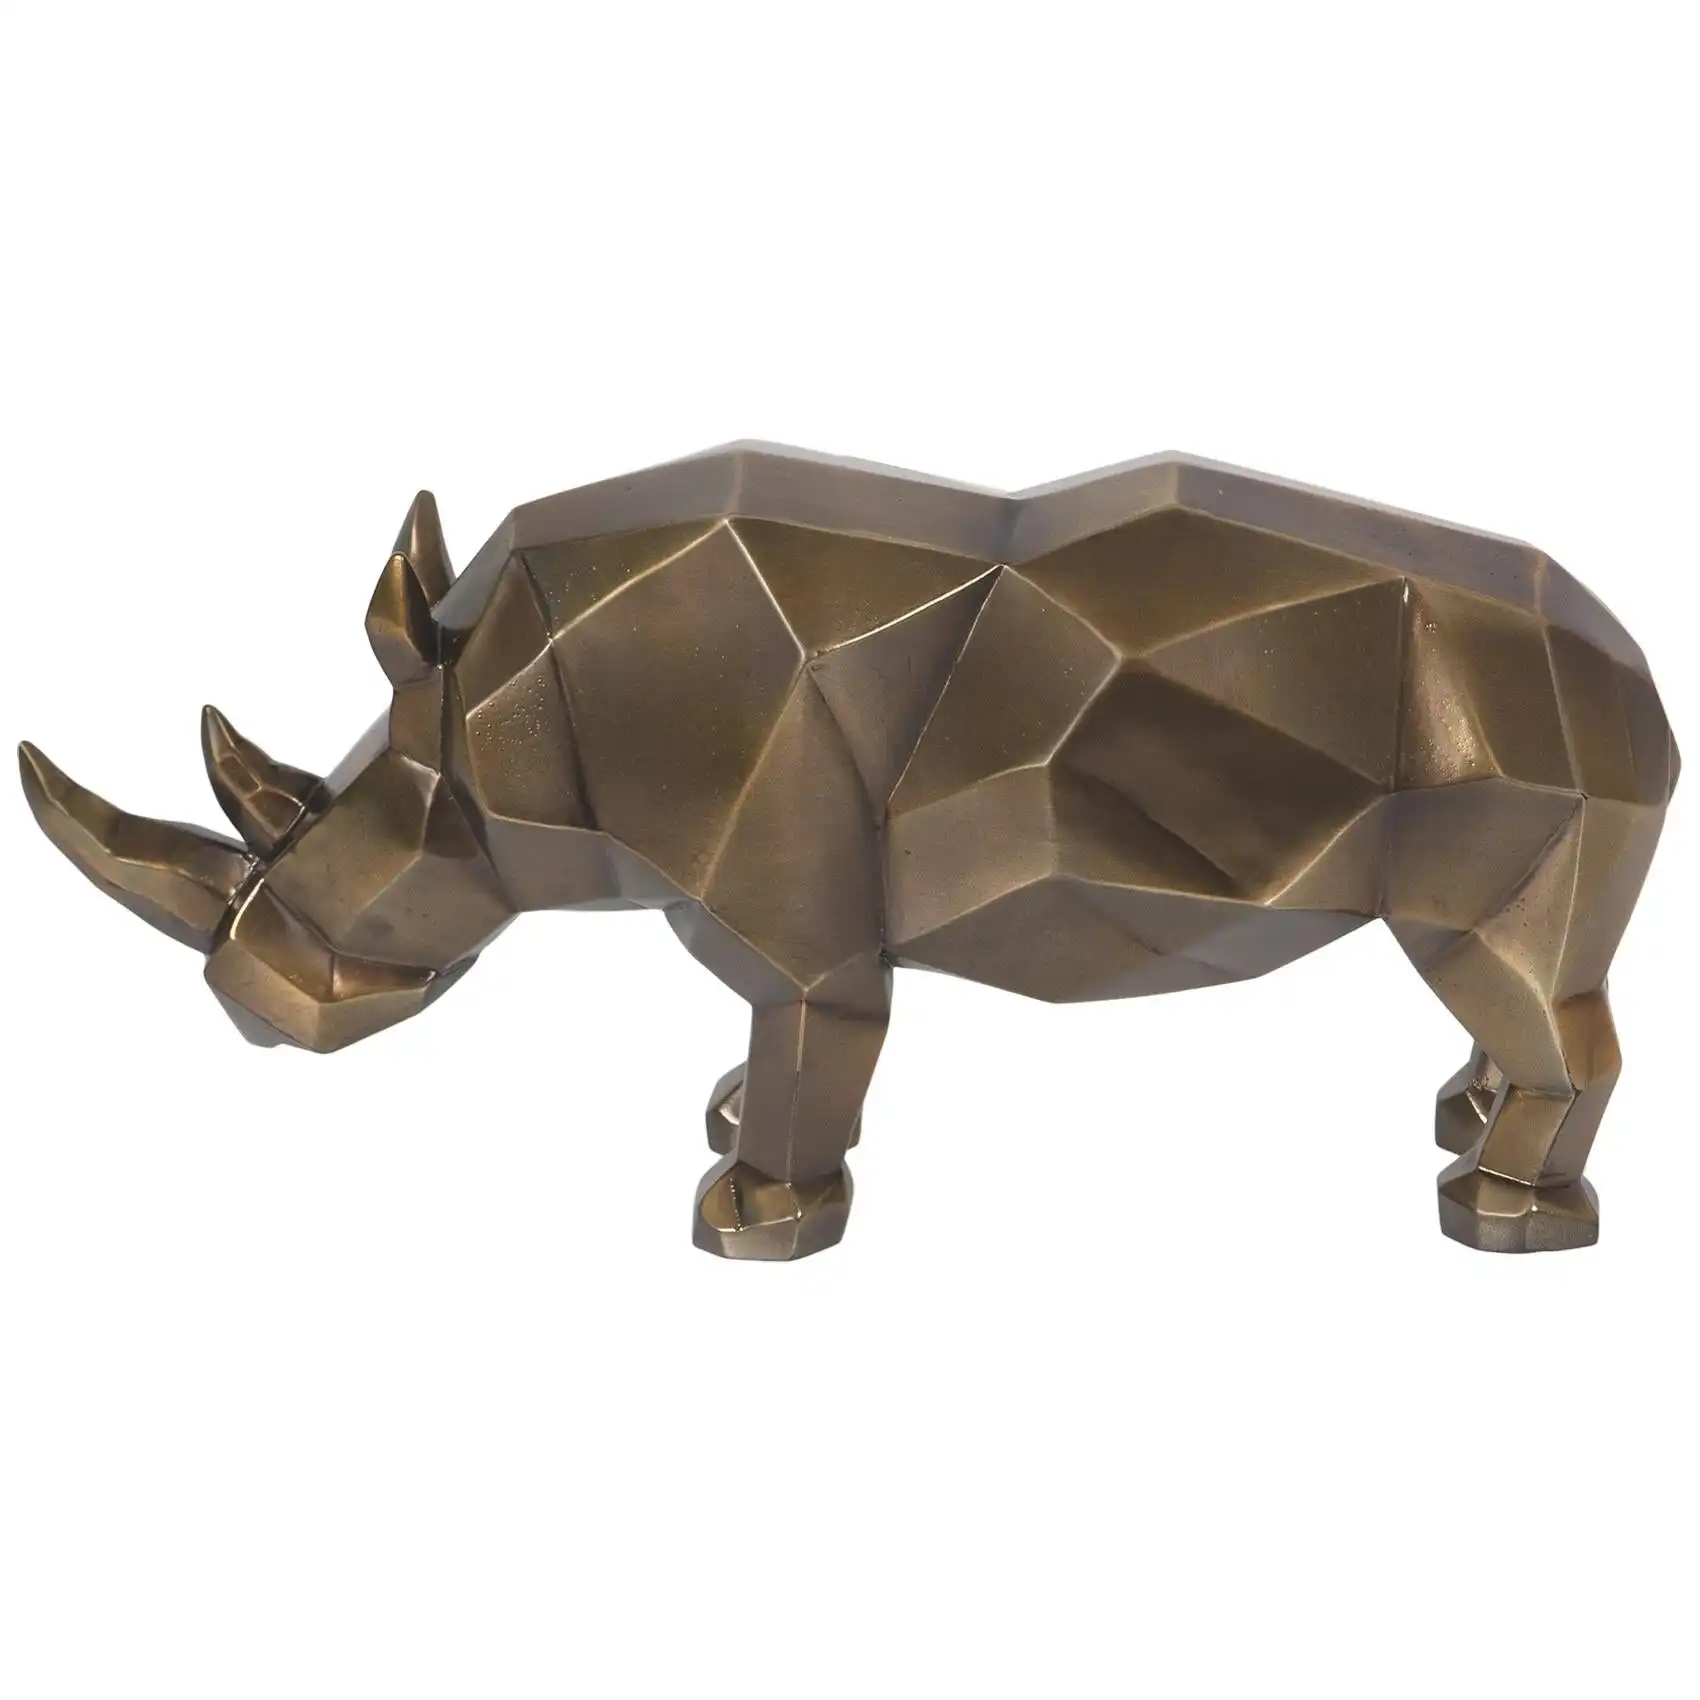 Figurine de rhinocéros design angulaire en laiton finition antique décoration de la maison décoration de table et d'étagère article de haute qualité en gros